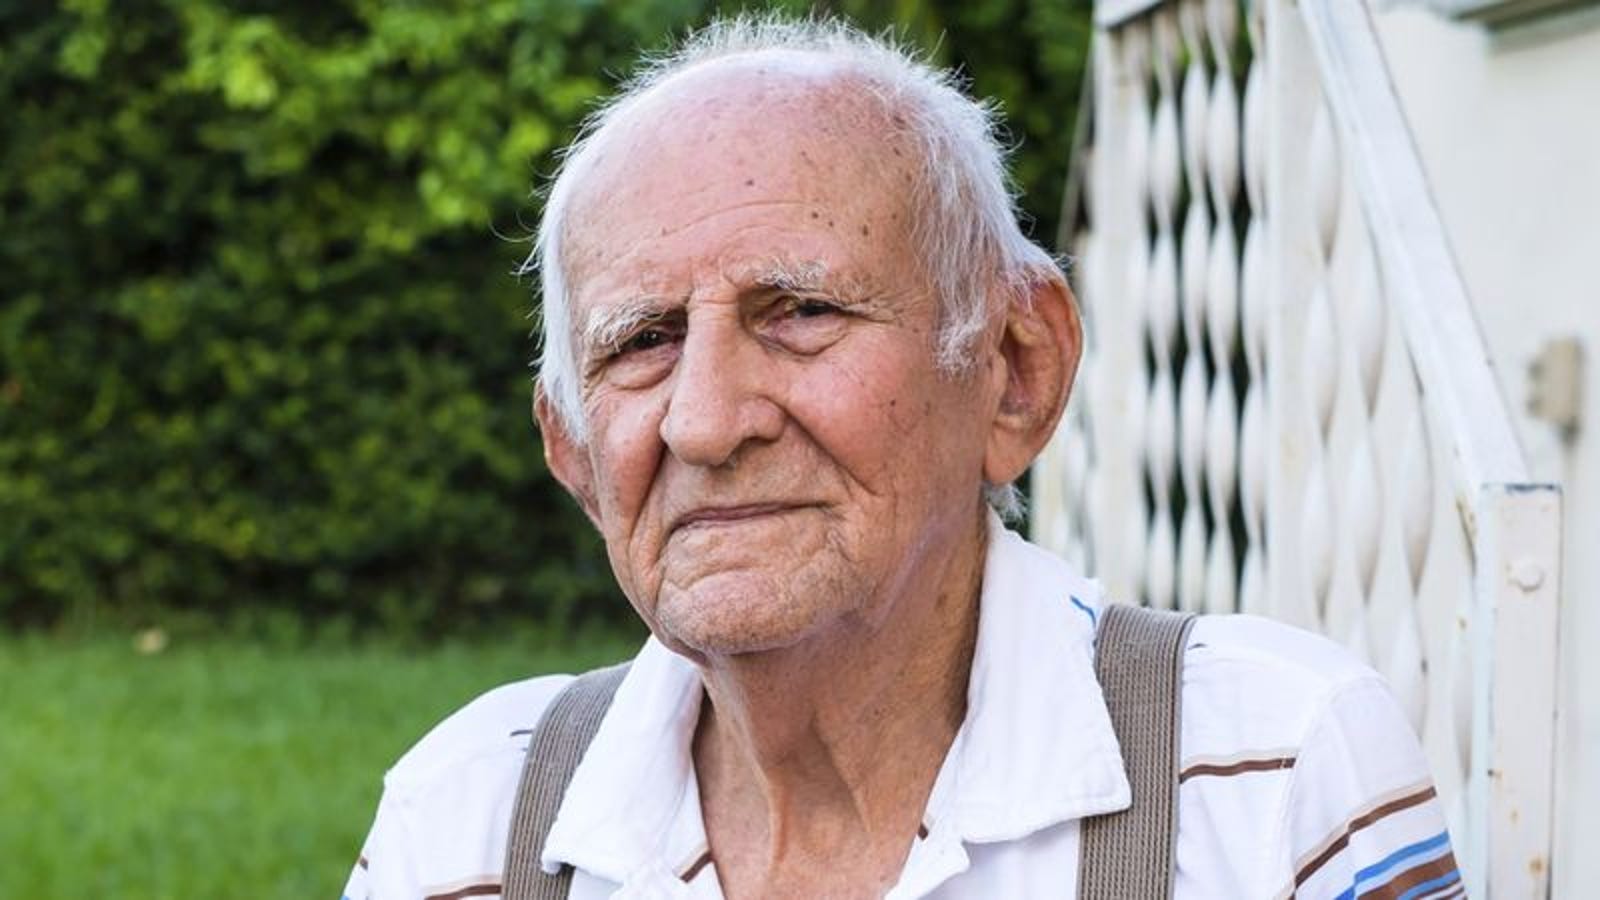 Elderly Man Hailed As Alert